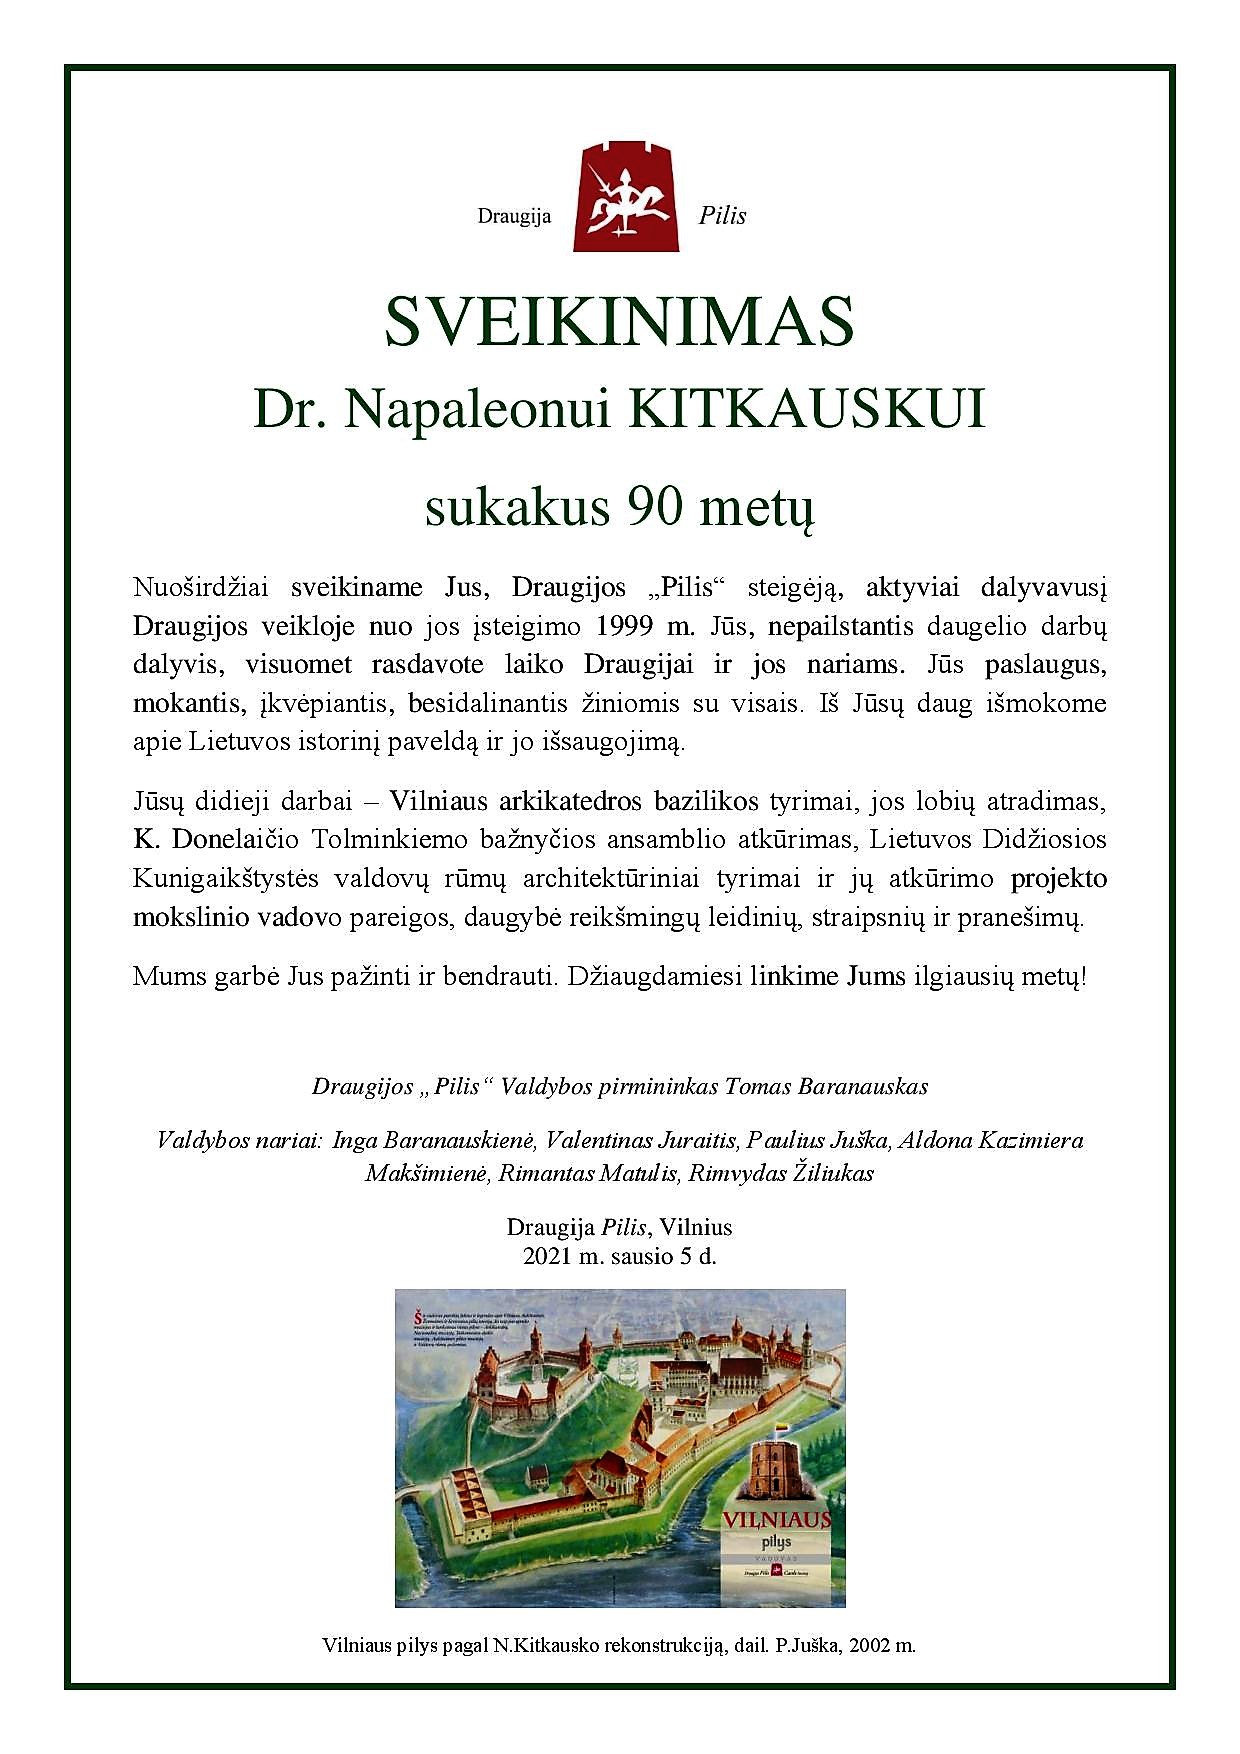 Sveikinimas dr. Napaleonui Kitkauskui 90-mečio proga